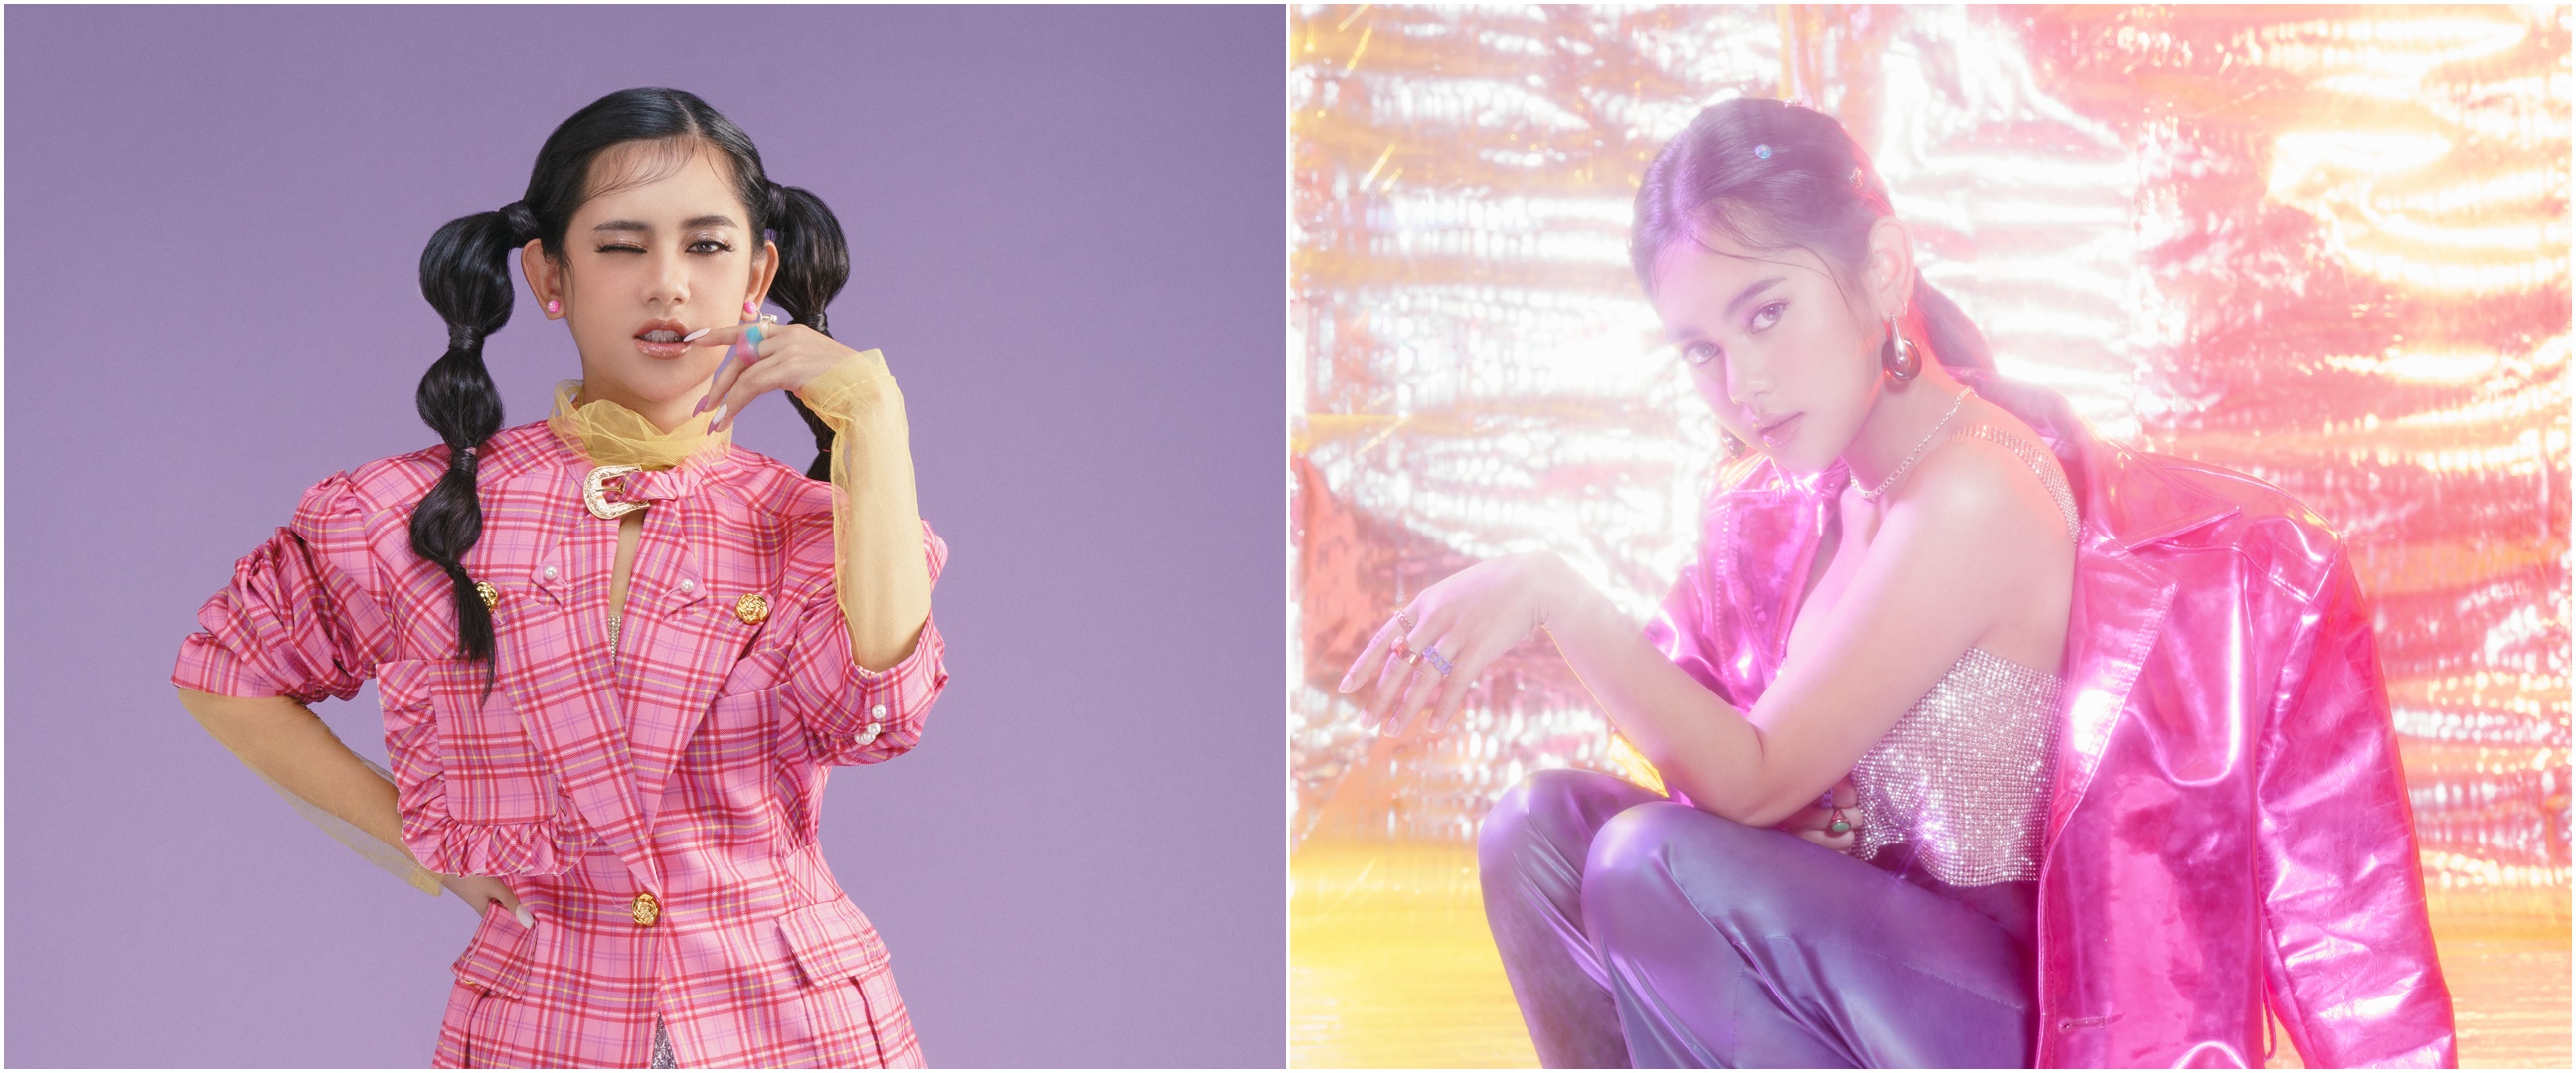 Dua tahun menanti, mimpi Ziva Magnolya punya album "Magnolya" terwujud